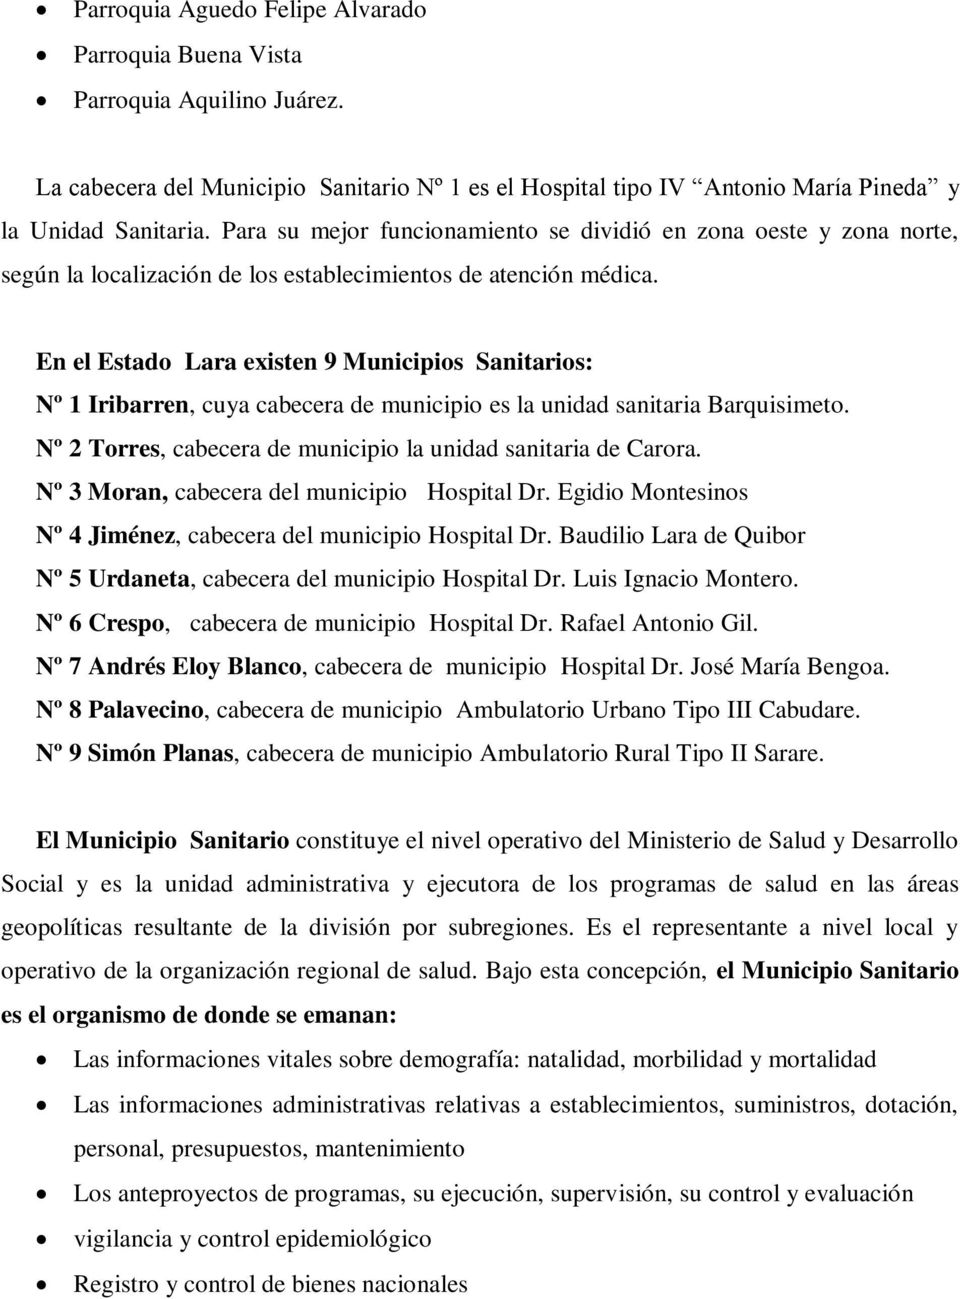 En el Estado Lara existen 9 Municipios Sanitarios: Nº 1 Iribarren, cuya cabecera de municipio es la unidad sanitaria Barquisimeto. Nº 2 Torres, cabecera de municipio la unidad sanitaria de Carora.